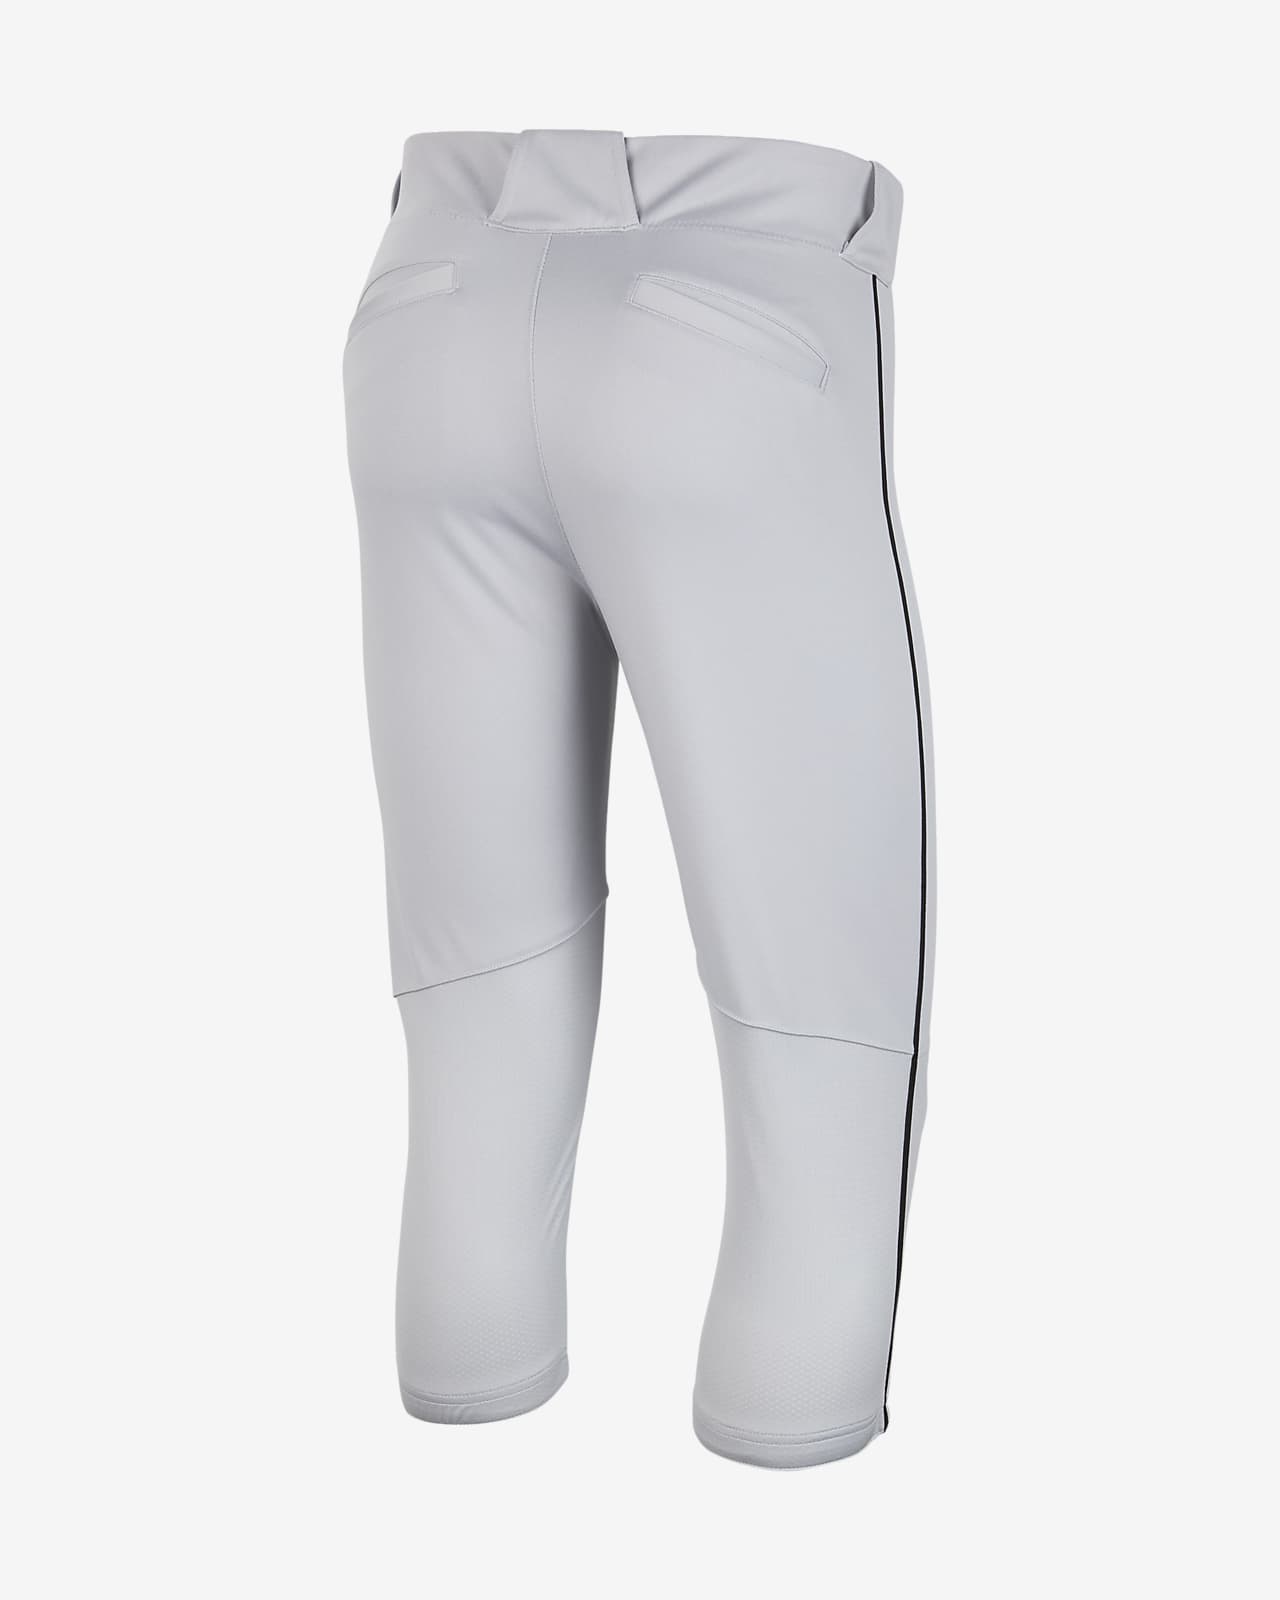 Nike Vapor Select Men's High Baseball Pants.